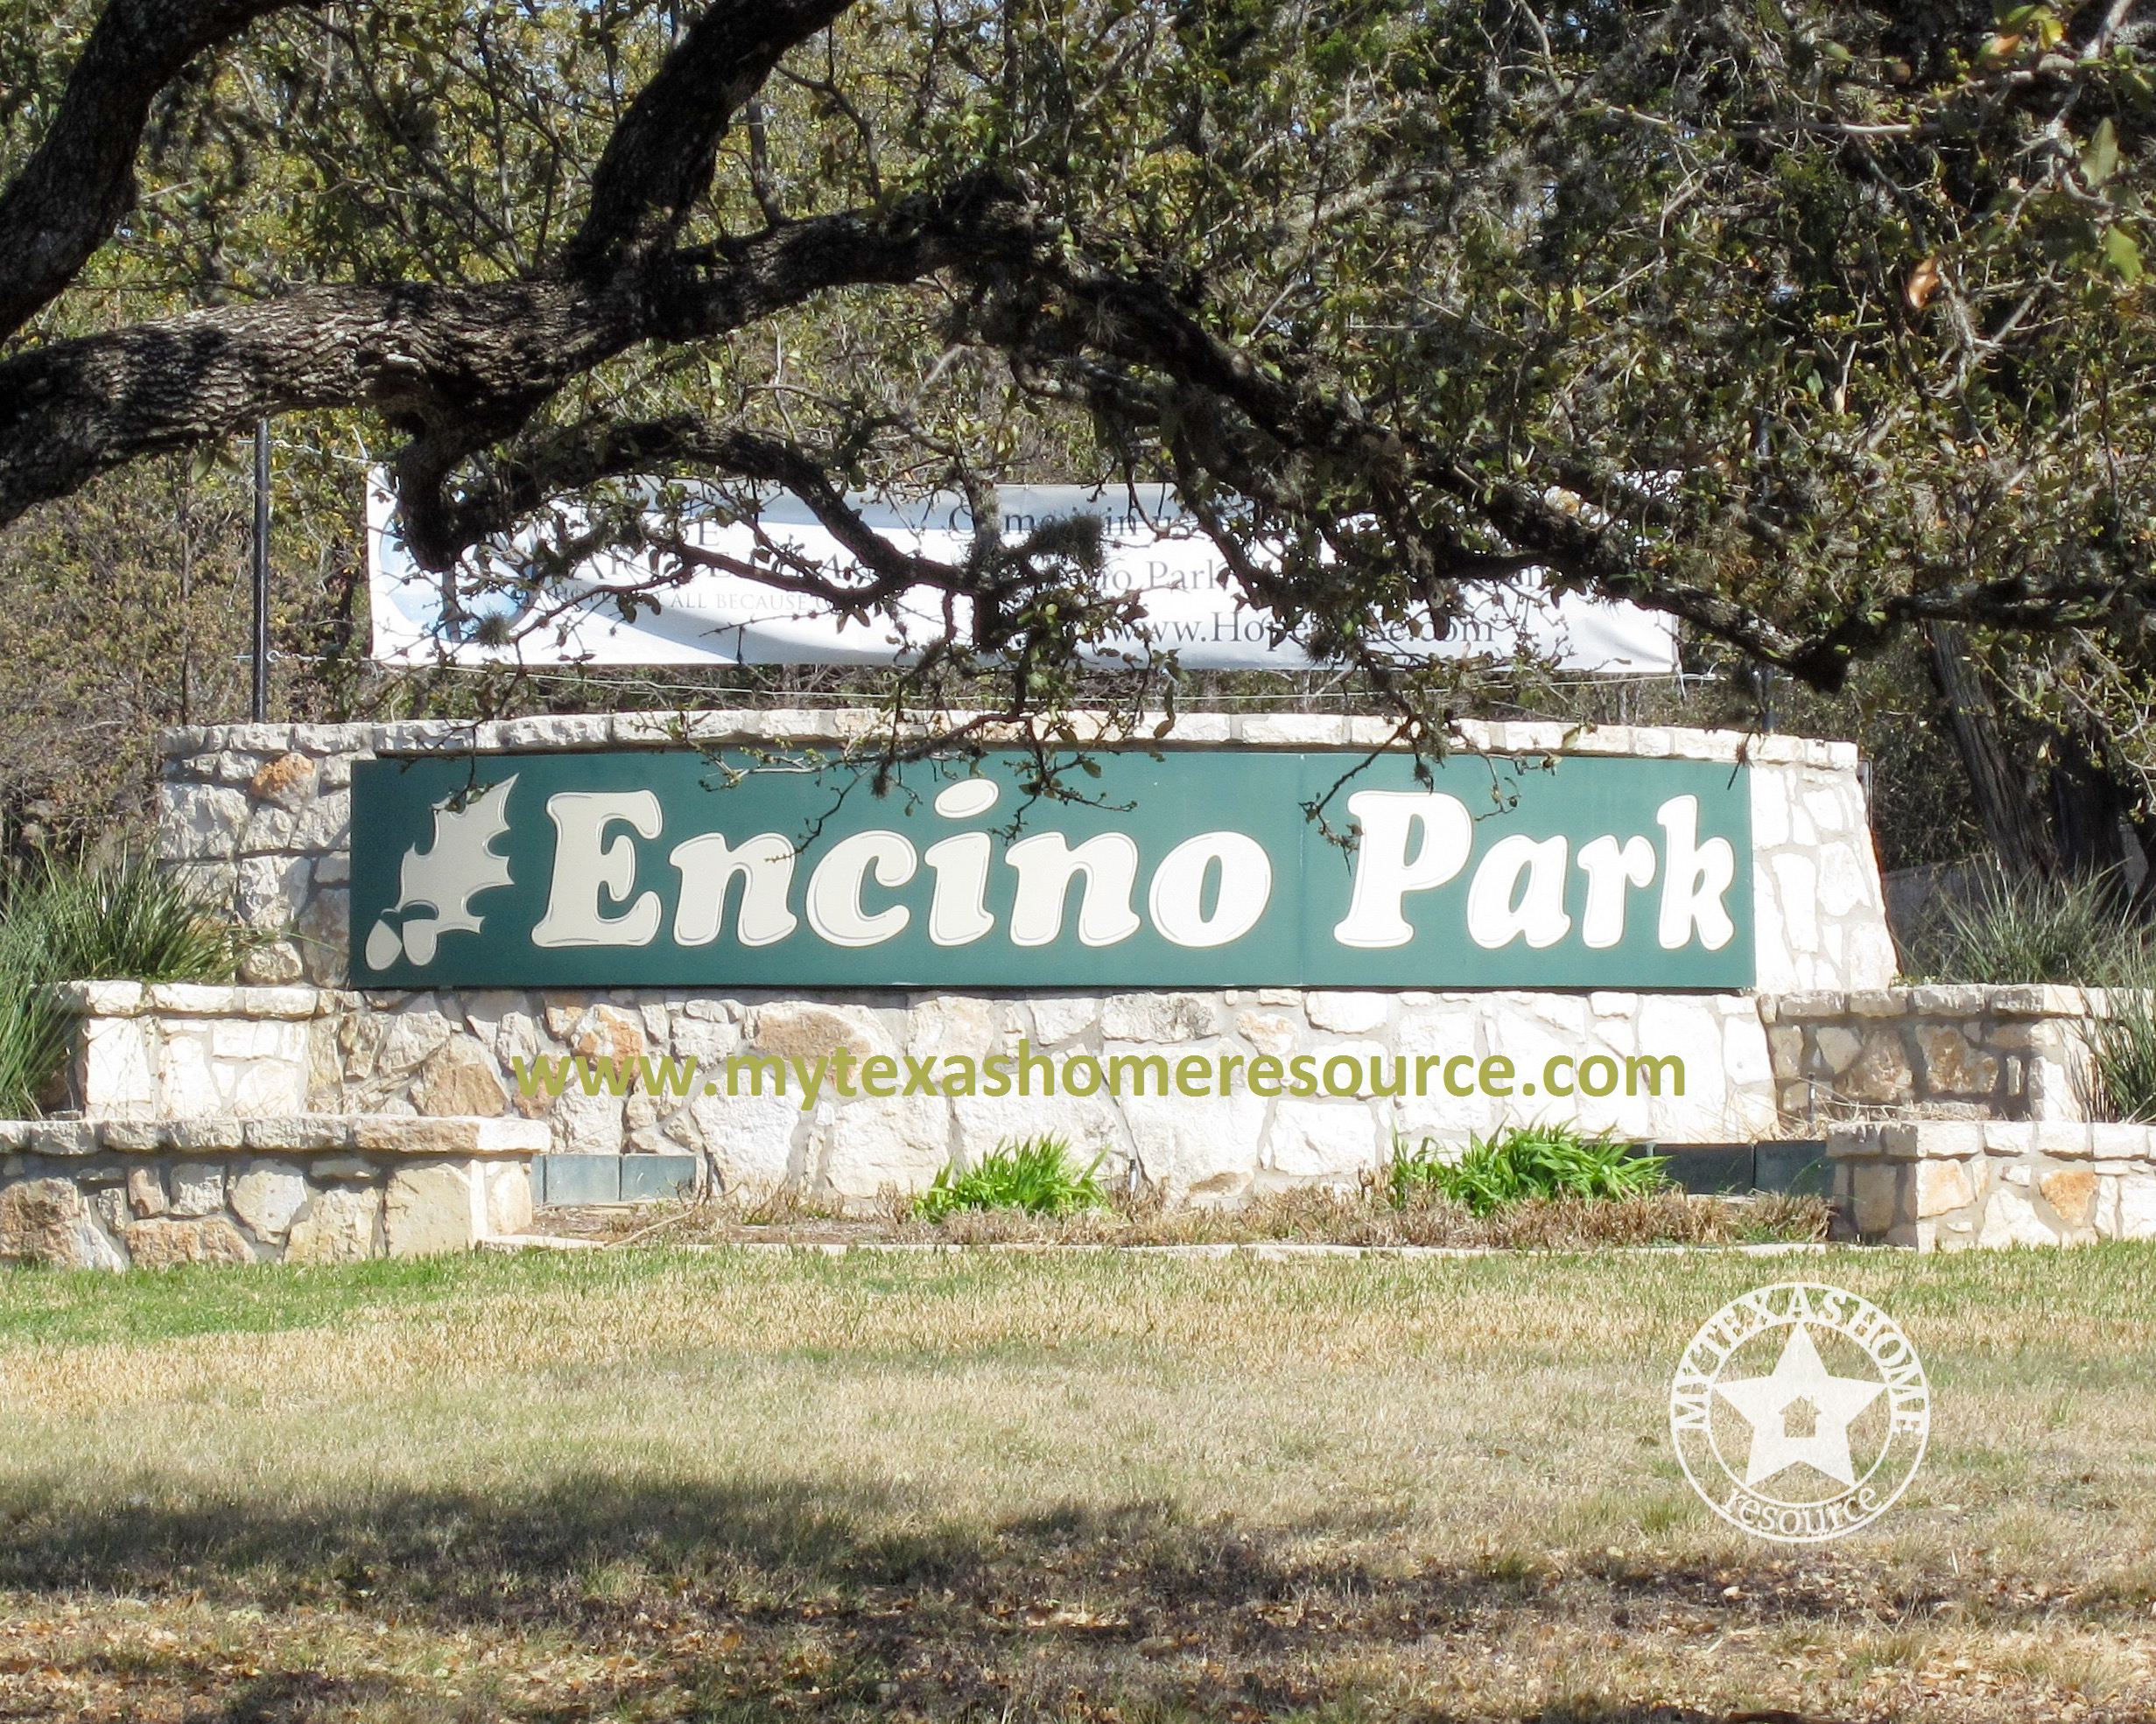 恩西诺公园社区网上正规的彩票网站，得克萨斯州